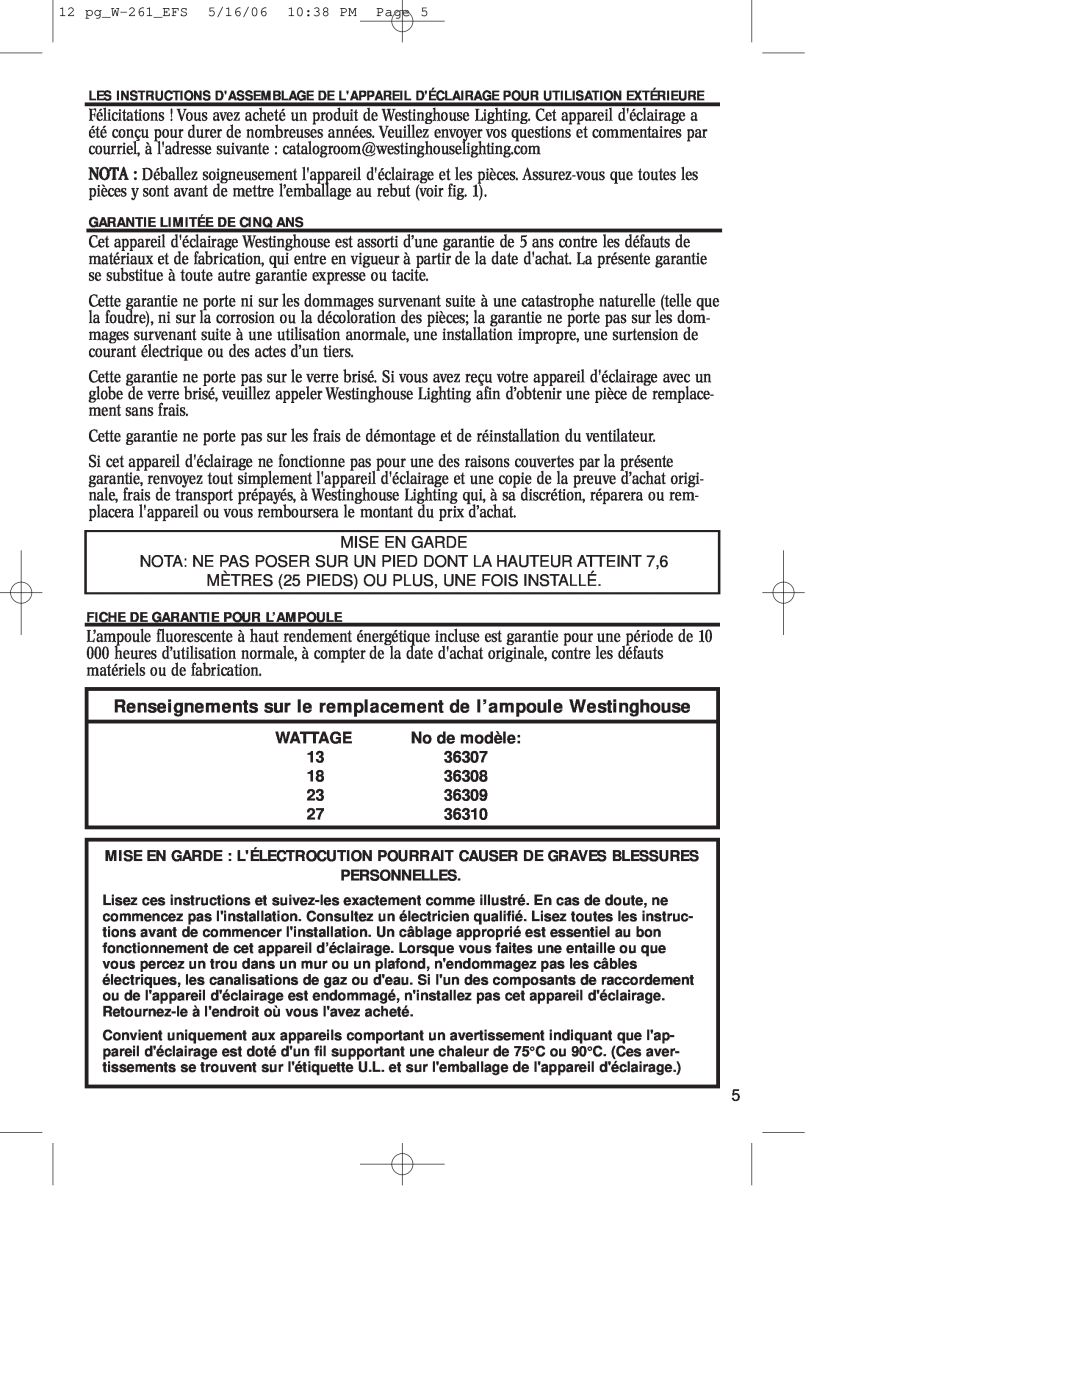 Westinghouse W-261 owner manual Renseignements sur le remplacement de l’ampoule Westinghouse, Personnelles 